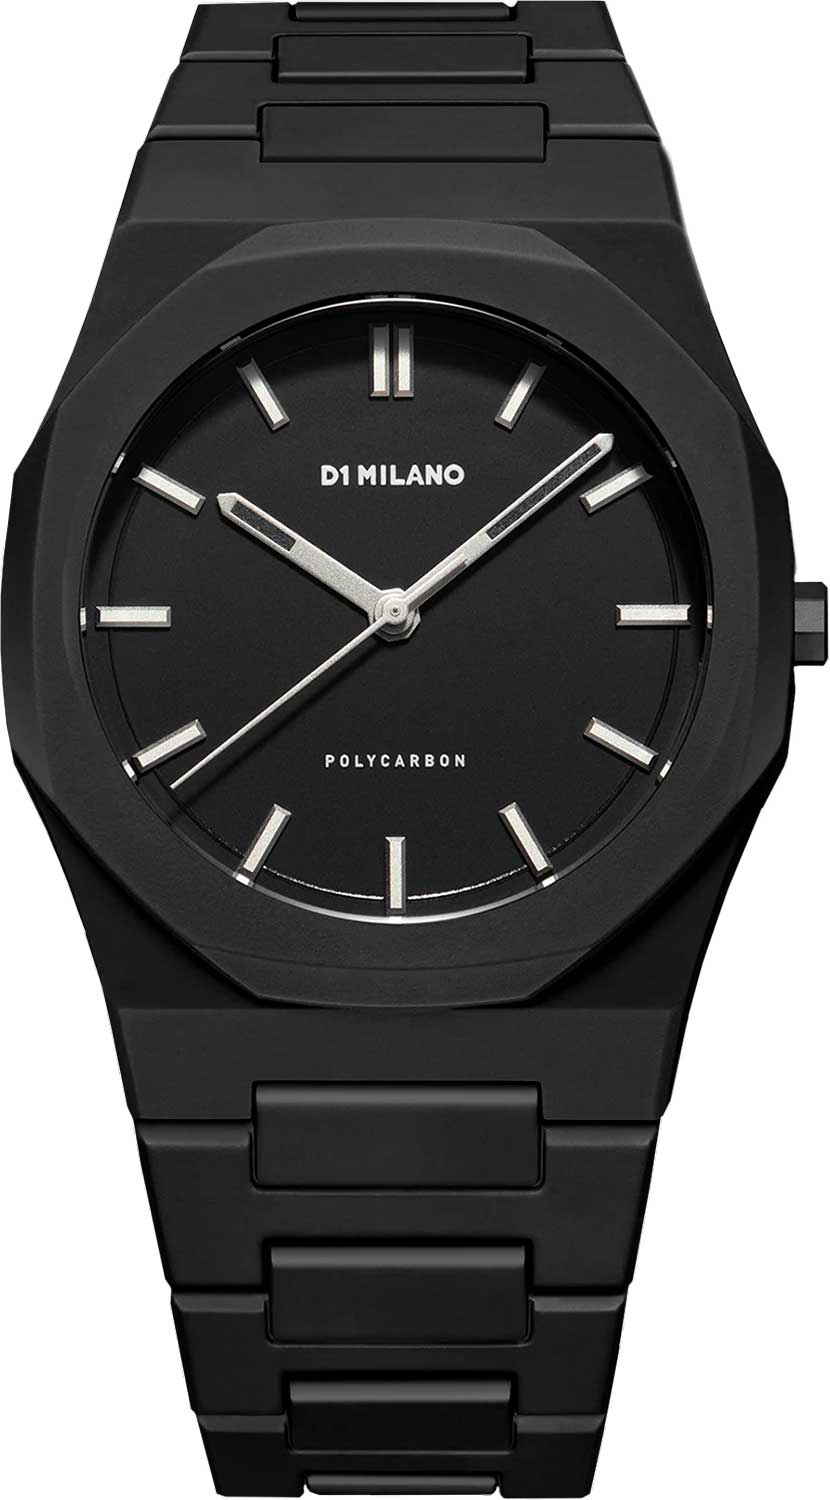 Наручные часы унисекс D1 Milano PCBJ11 черные